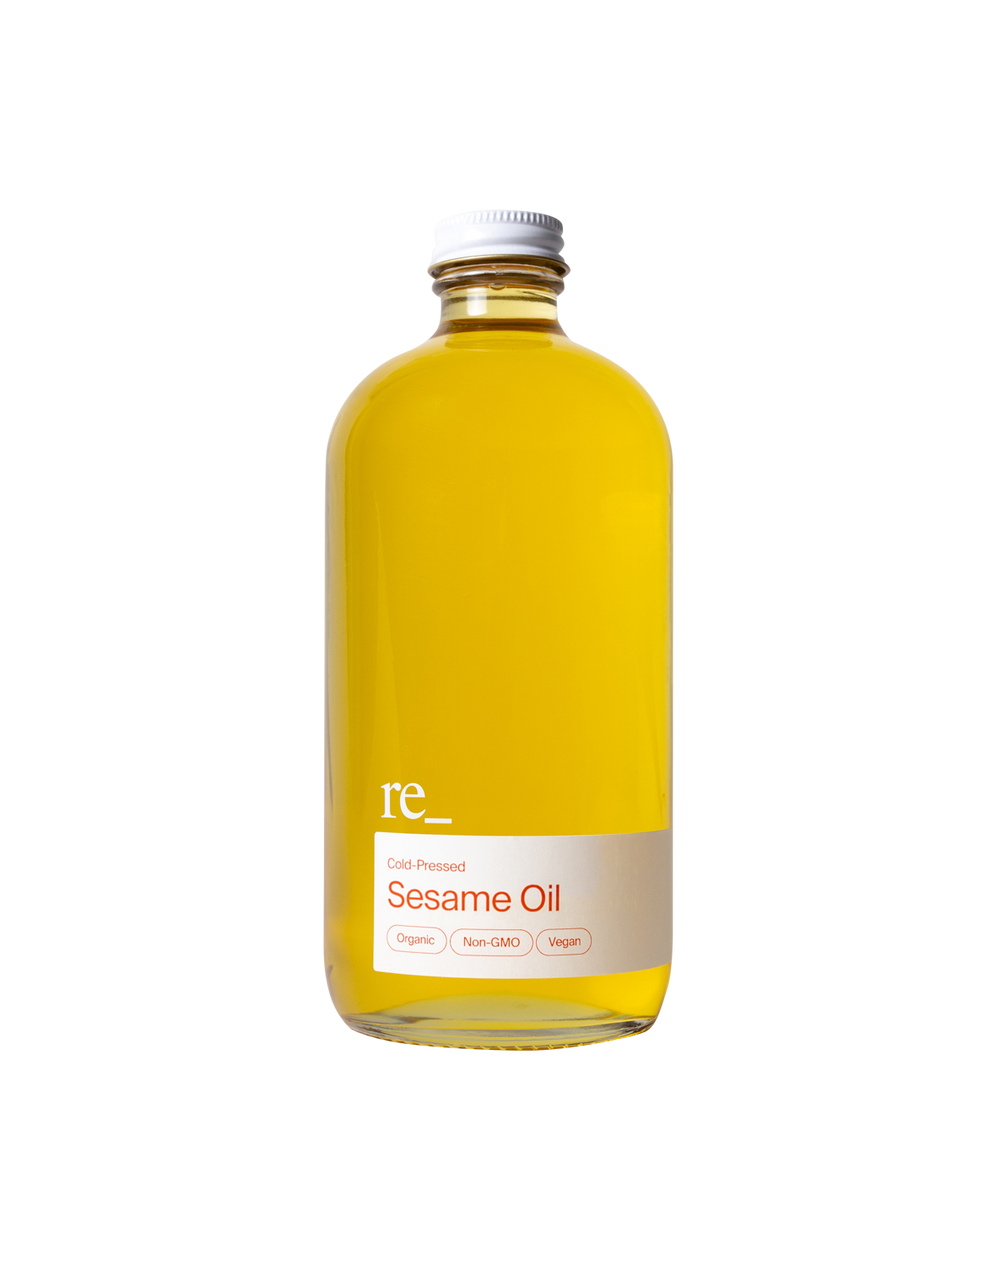 Sesame Oil, Cold-pressed, Bottle re_